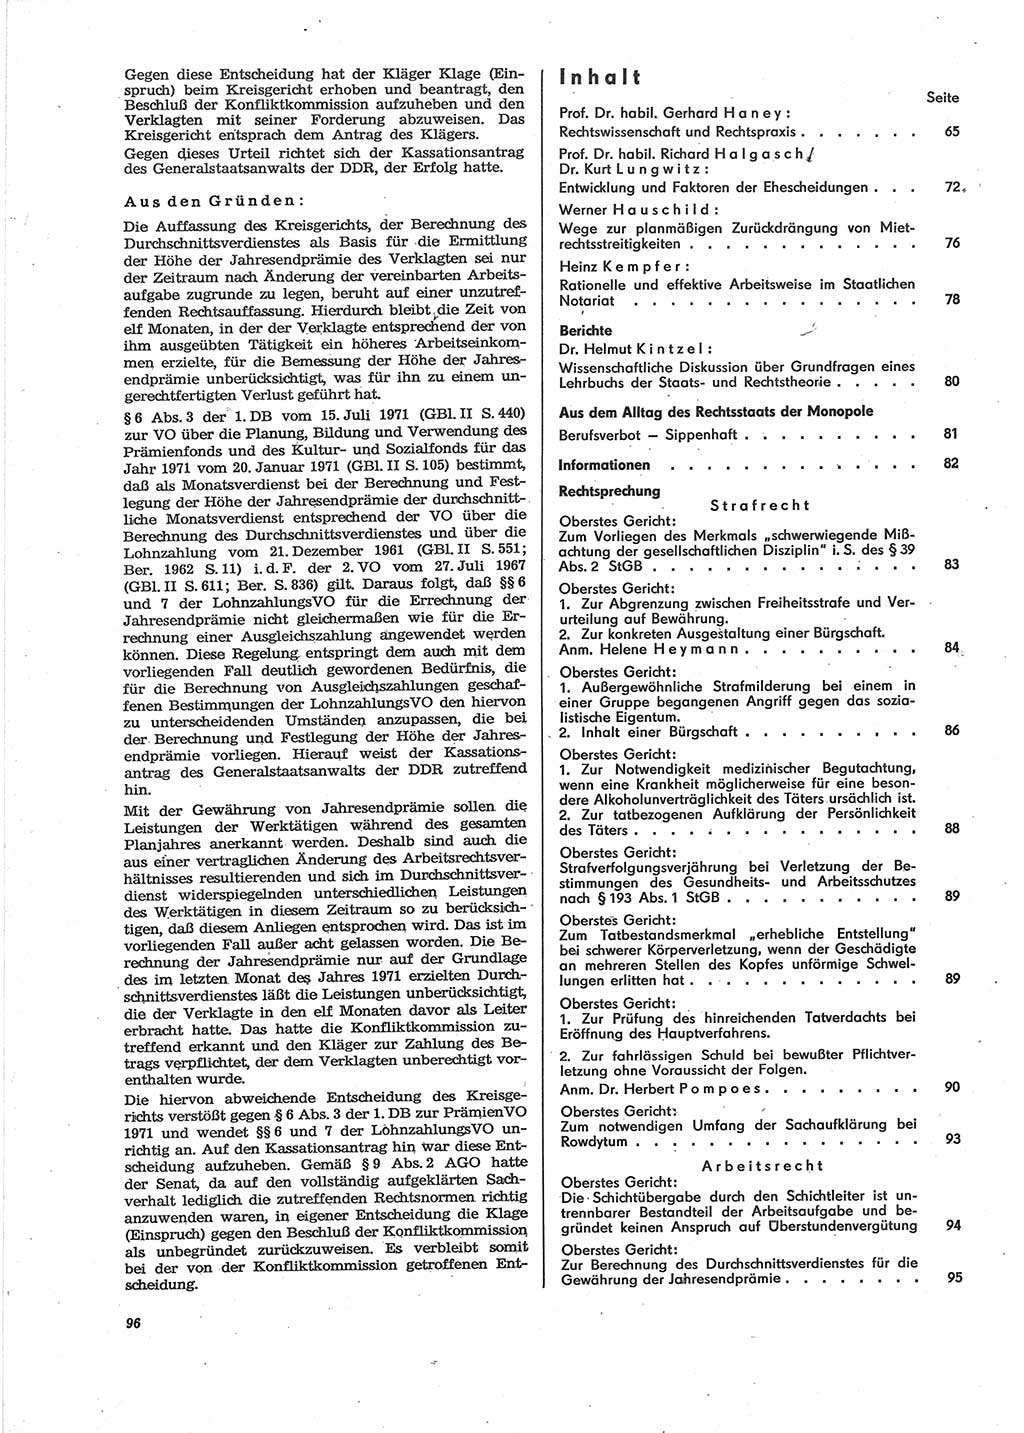 Neue Justiz (NJ), Zeitschrift für Recht und Rechtswissenschaft [Deutsche Demokratische Republik (DDR)], 28. Jahrgang 1974, Seite 96 (NJ DDR 1974, S. 96)